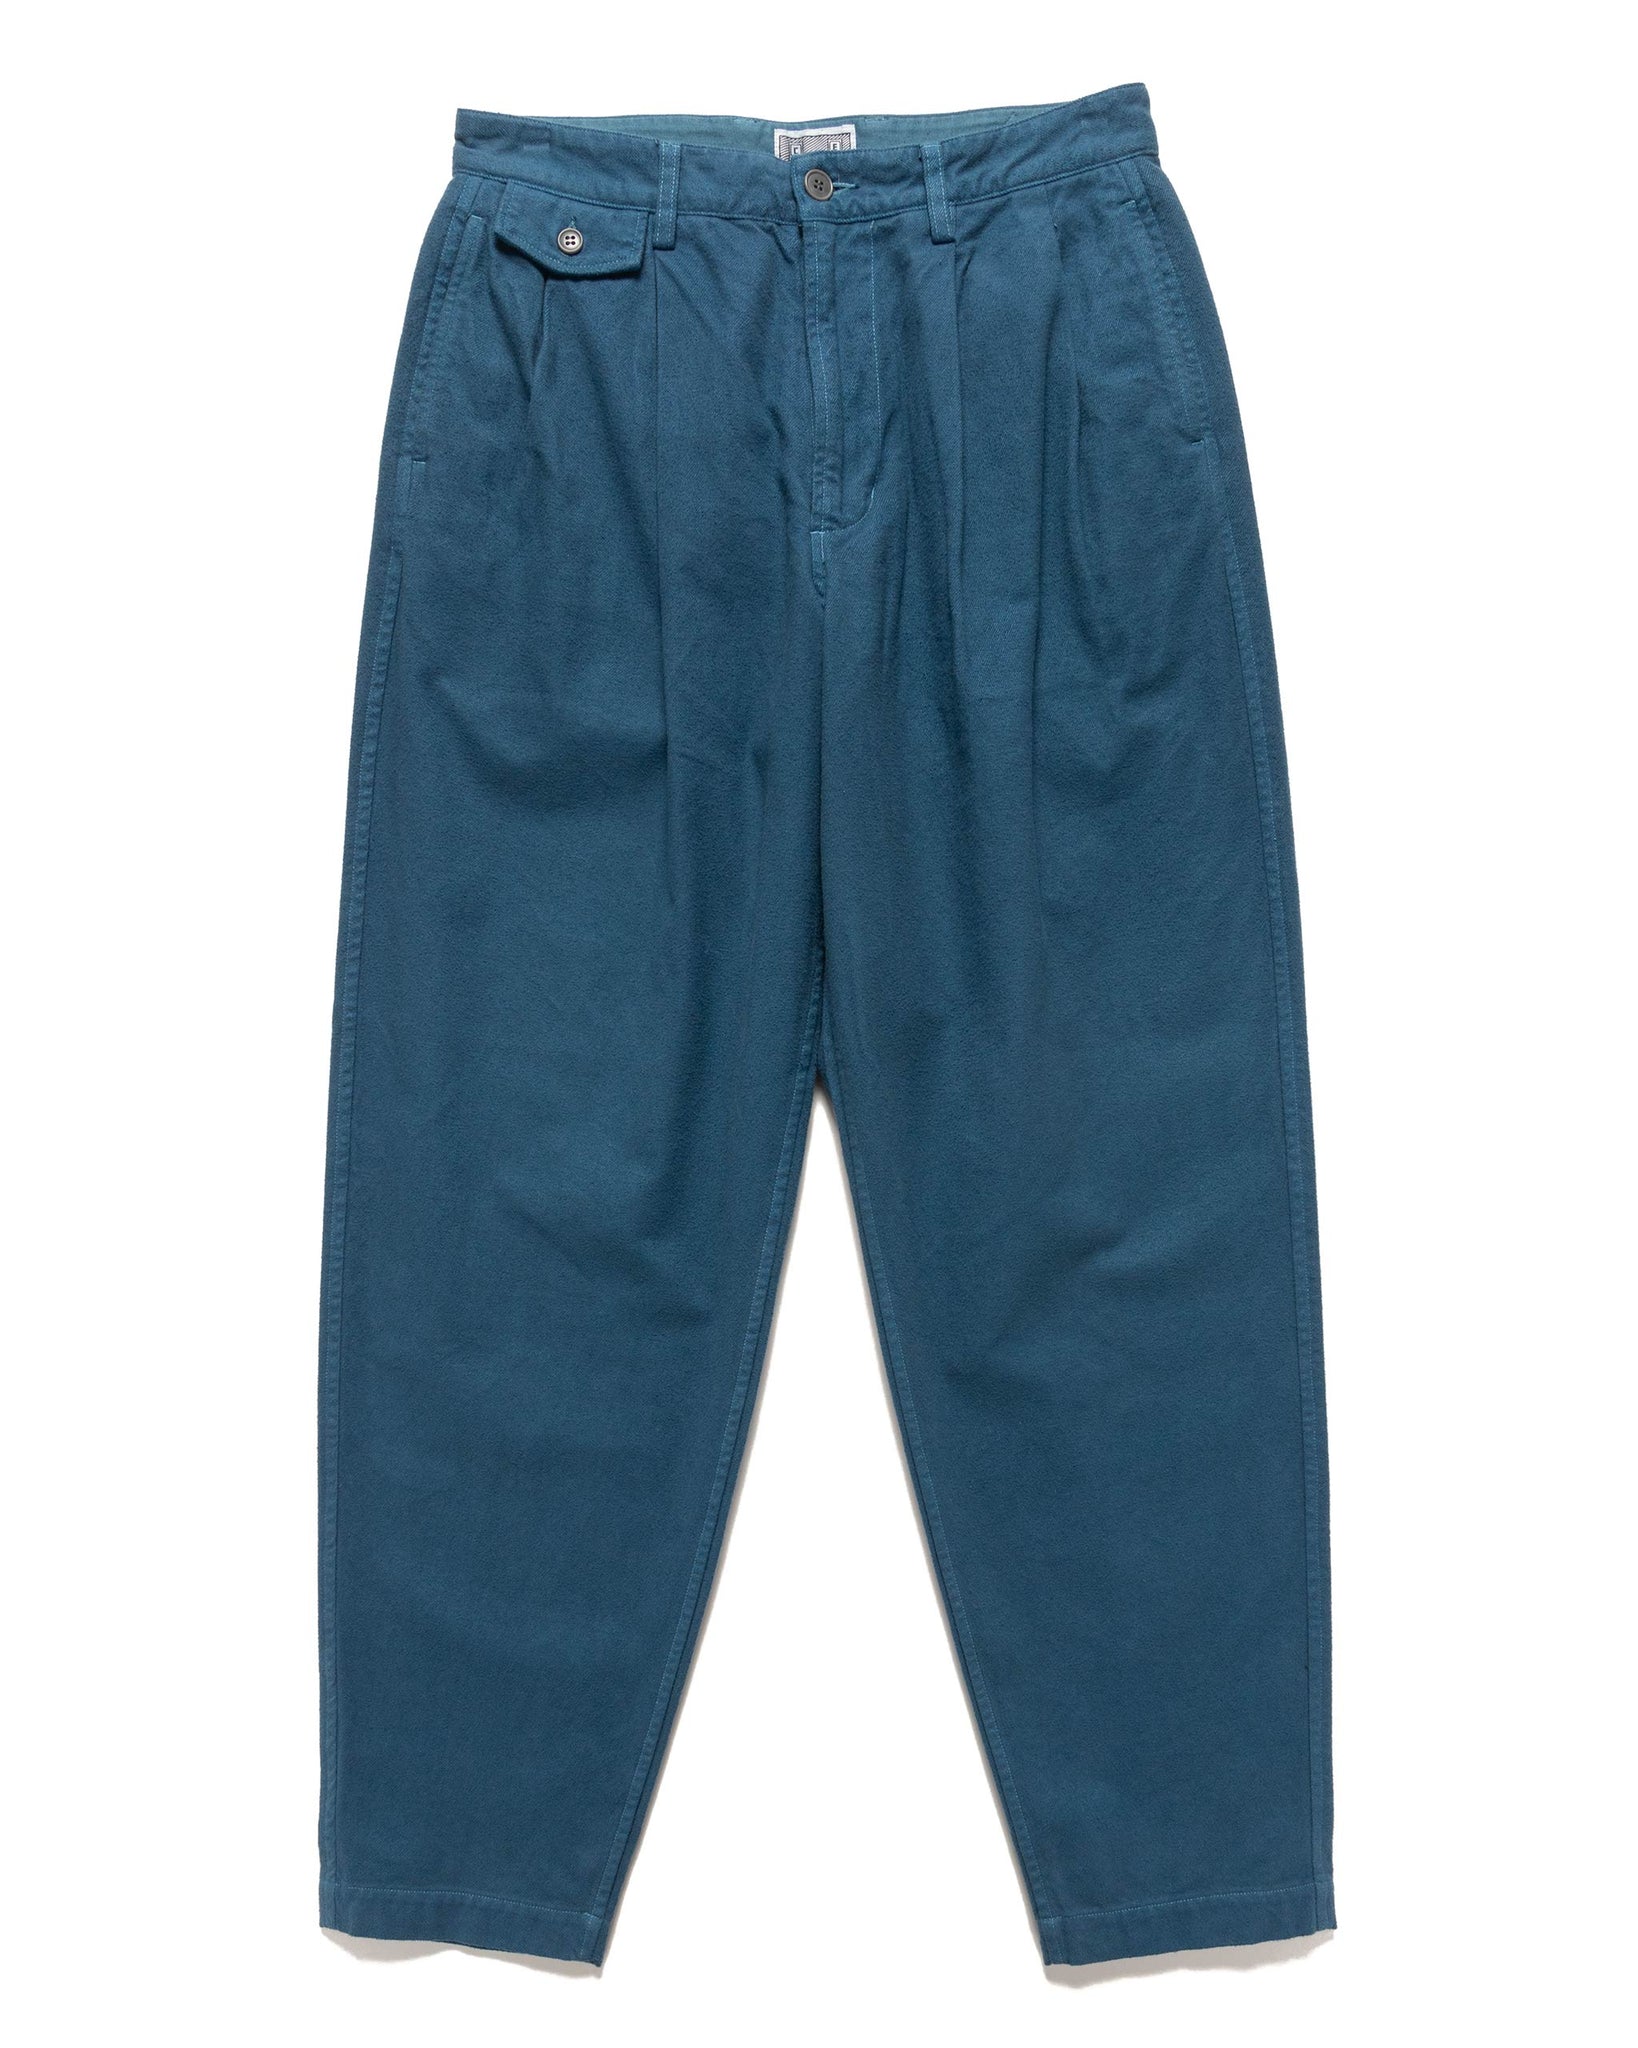 empt overdye cotton casual pants charcoal $ 470 . 00 cad size s m l xl ...